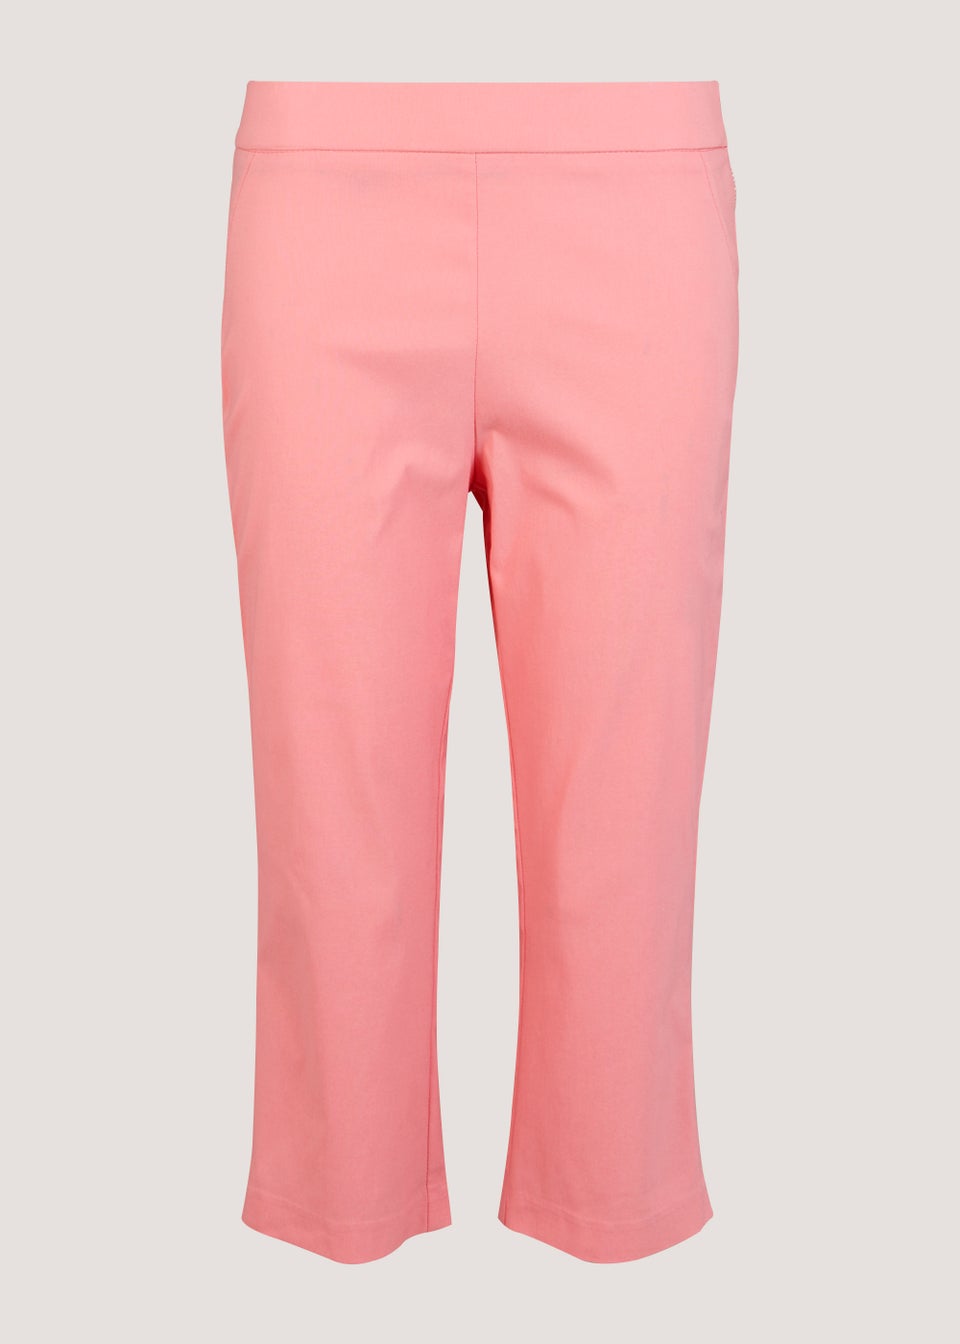 Pink Bengaline Cropped Trousers - Matalan